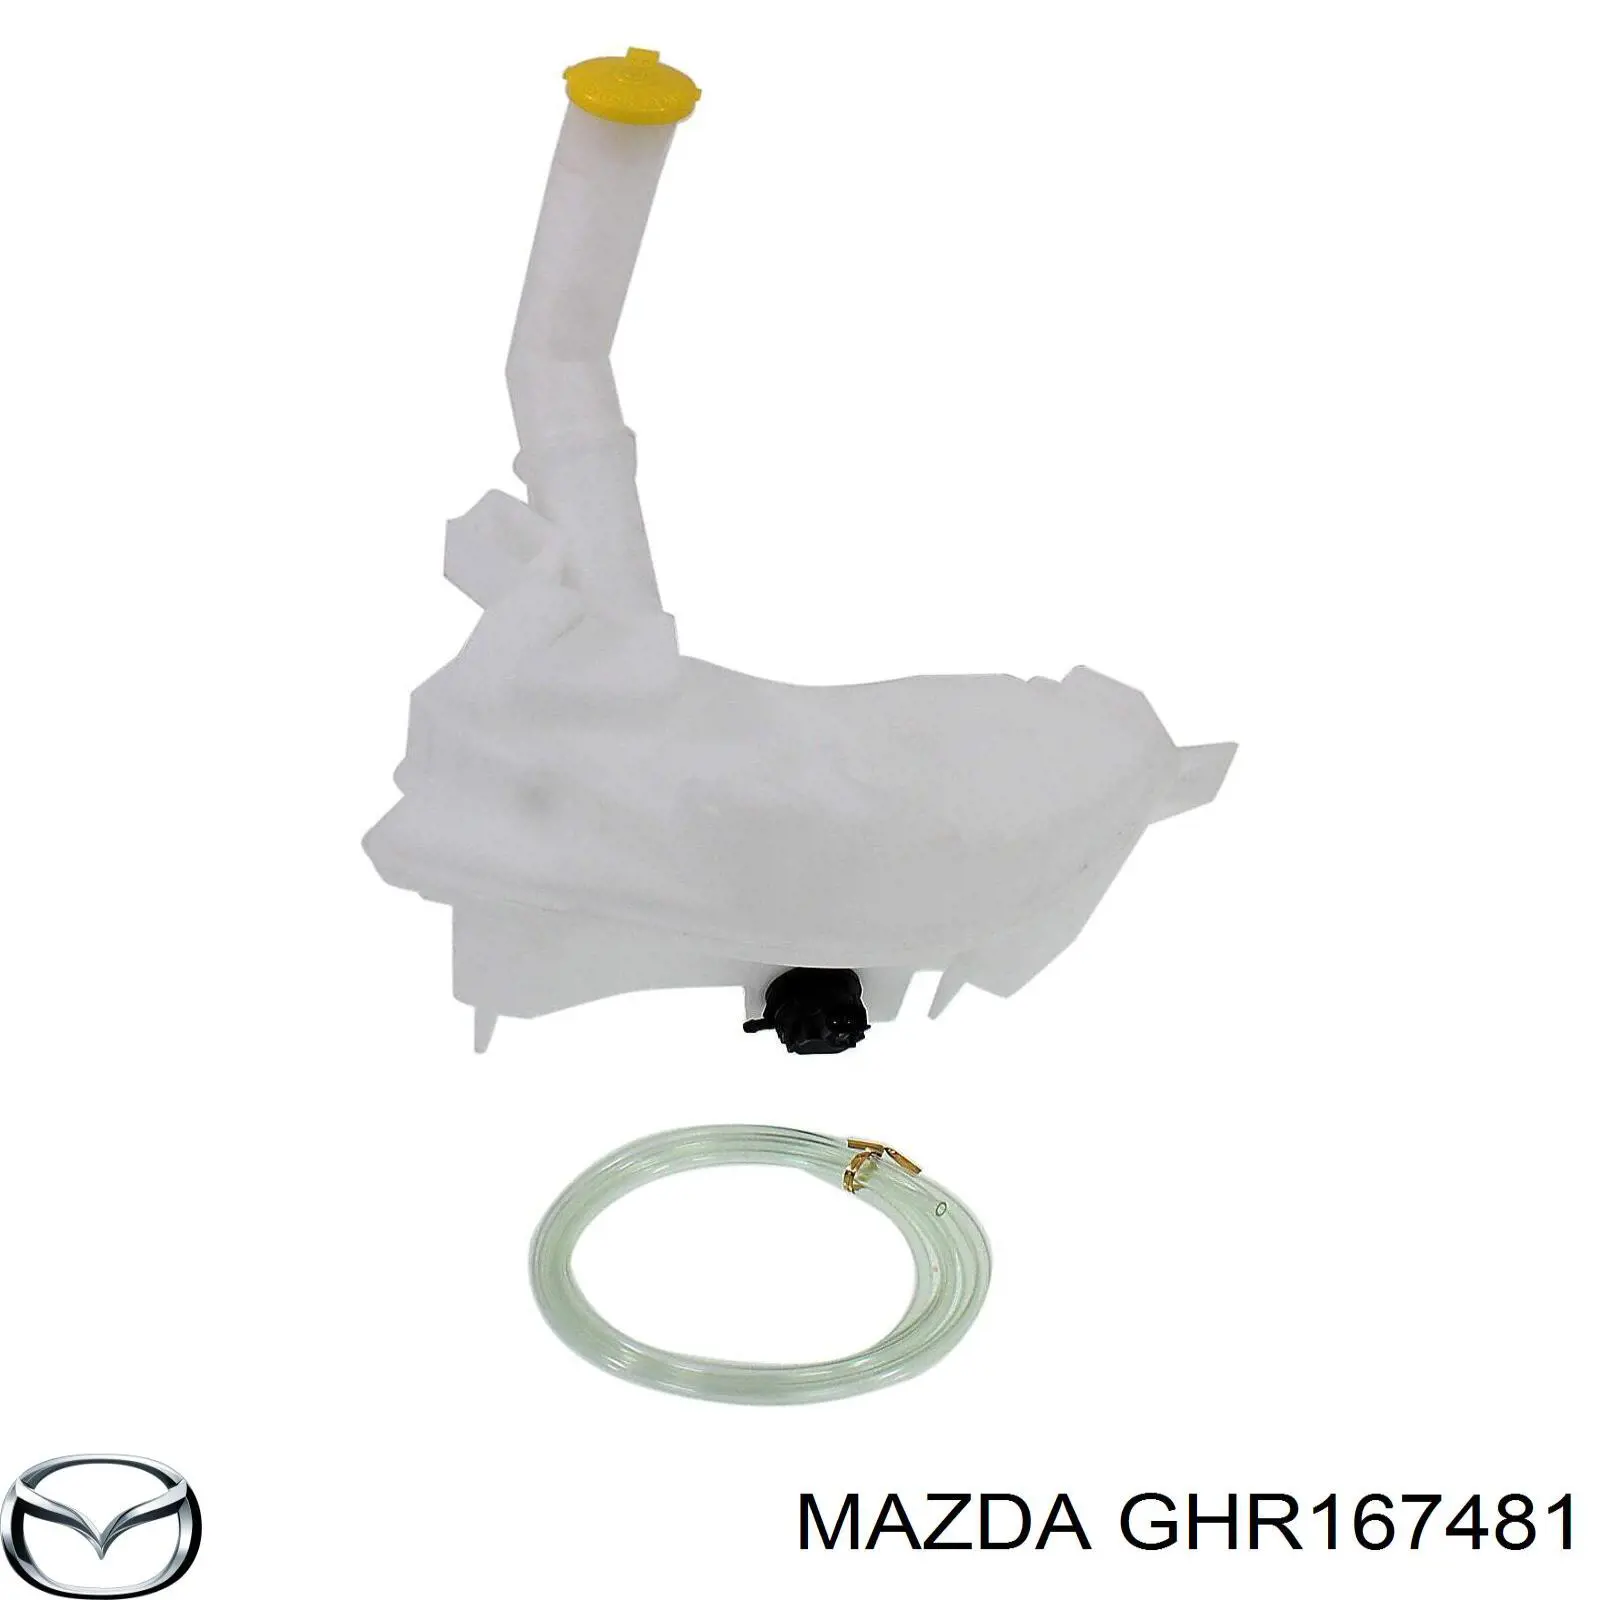 GHR167481 Mazda depósito de agua del limpiaparabrisas